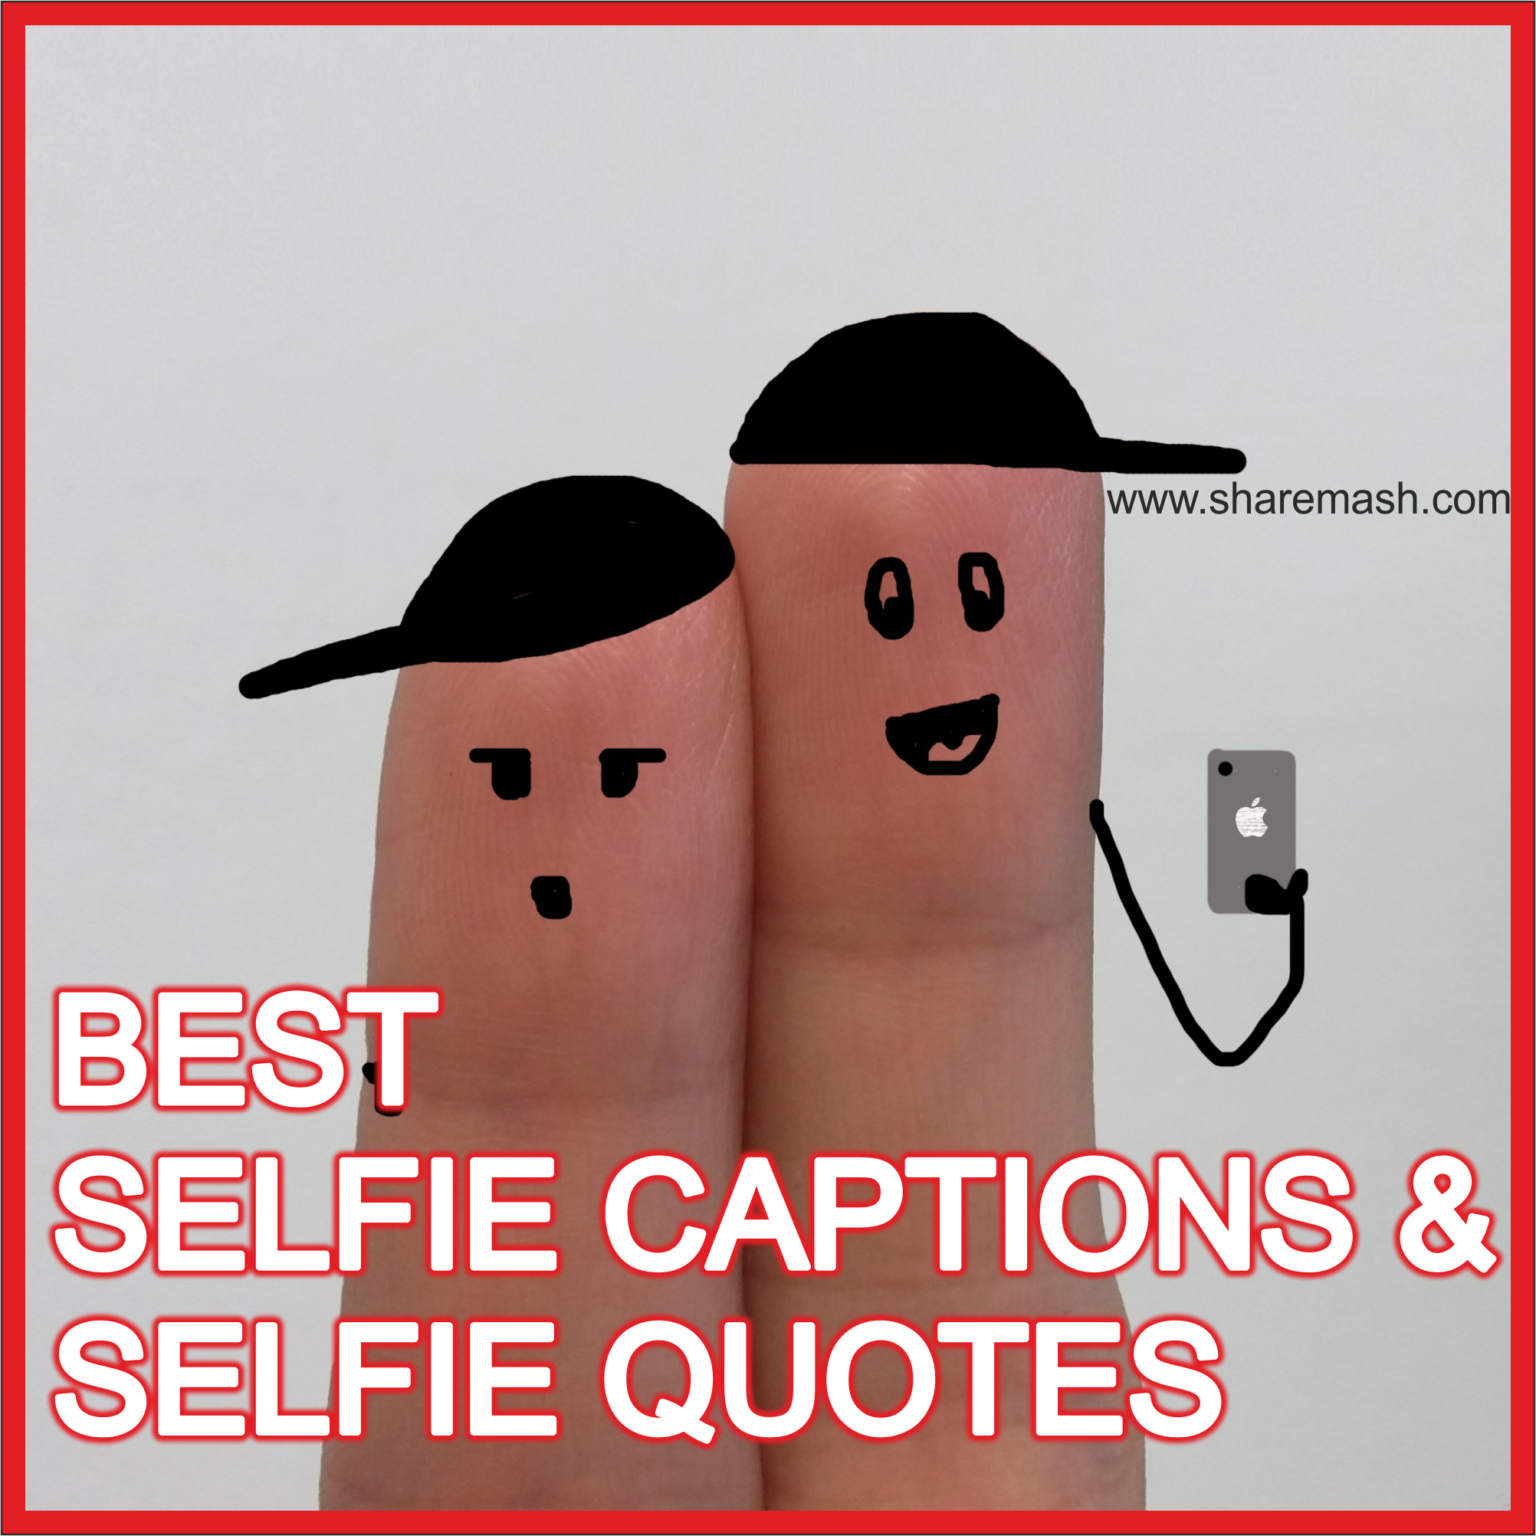 207+[Best] Selfie Captions & Selfie Quotes for Instagram & Facebook